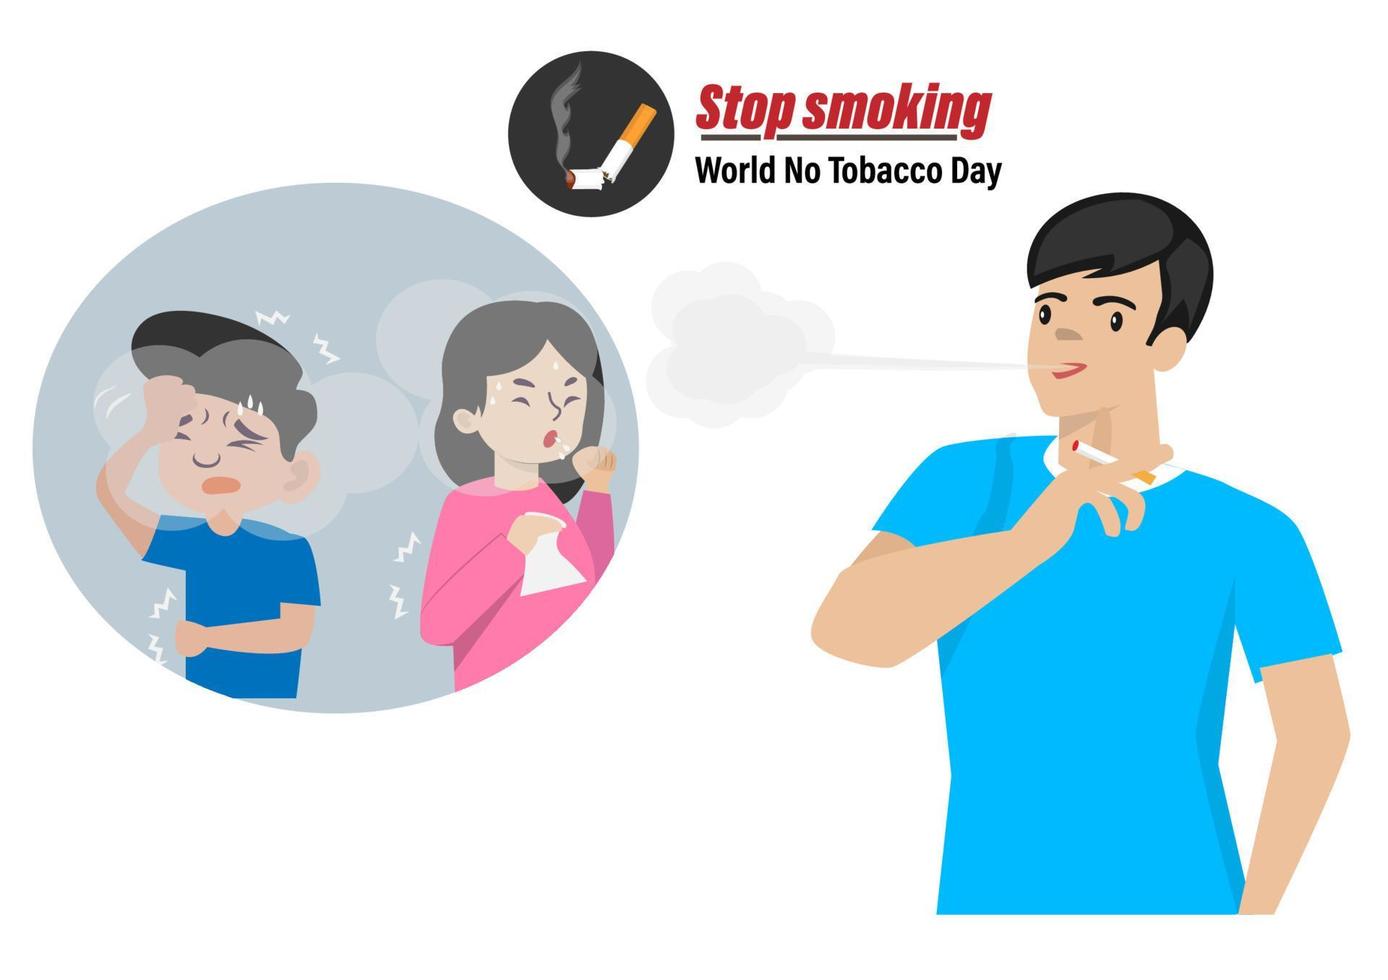 roken op openbare plaatsen veroorzaakt luchtvervuiling, sigarettenrook zal anderen schaden. vormt een risico op ziekte, wereld rookvrije dag concept vector